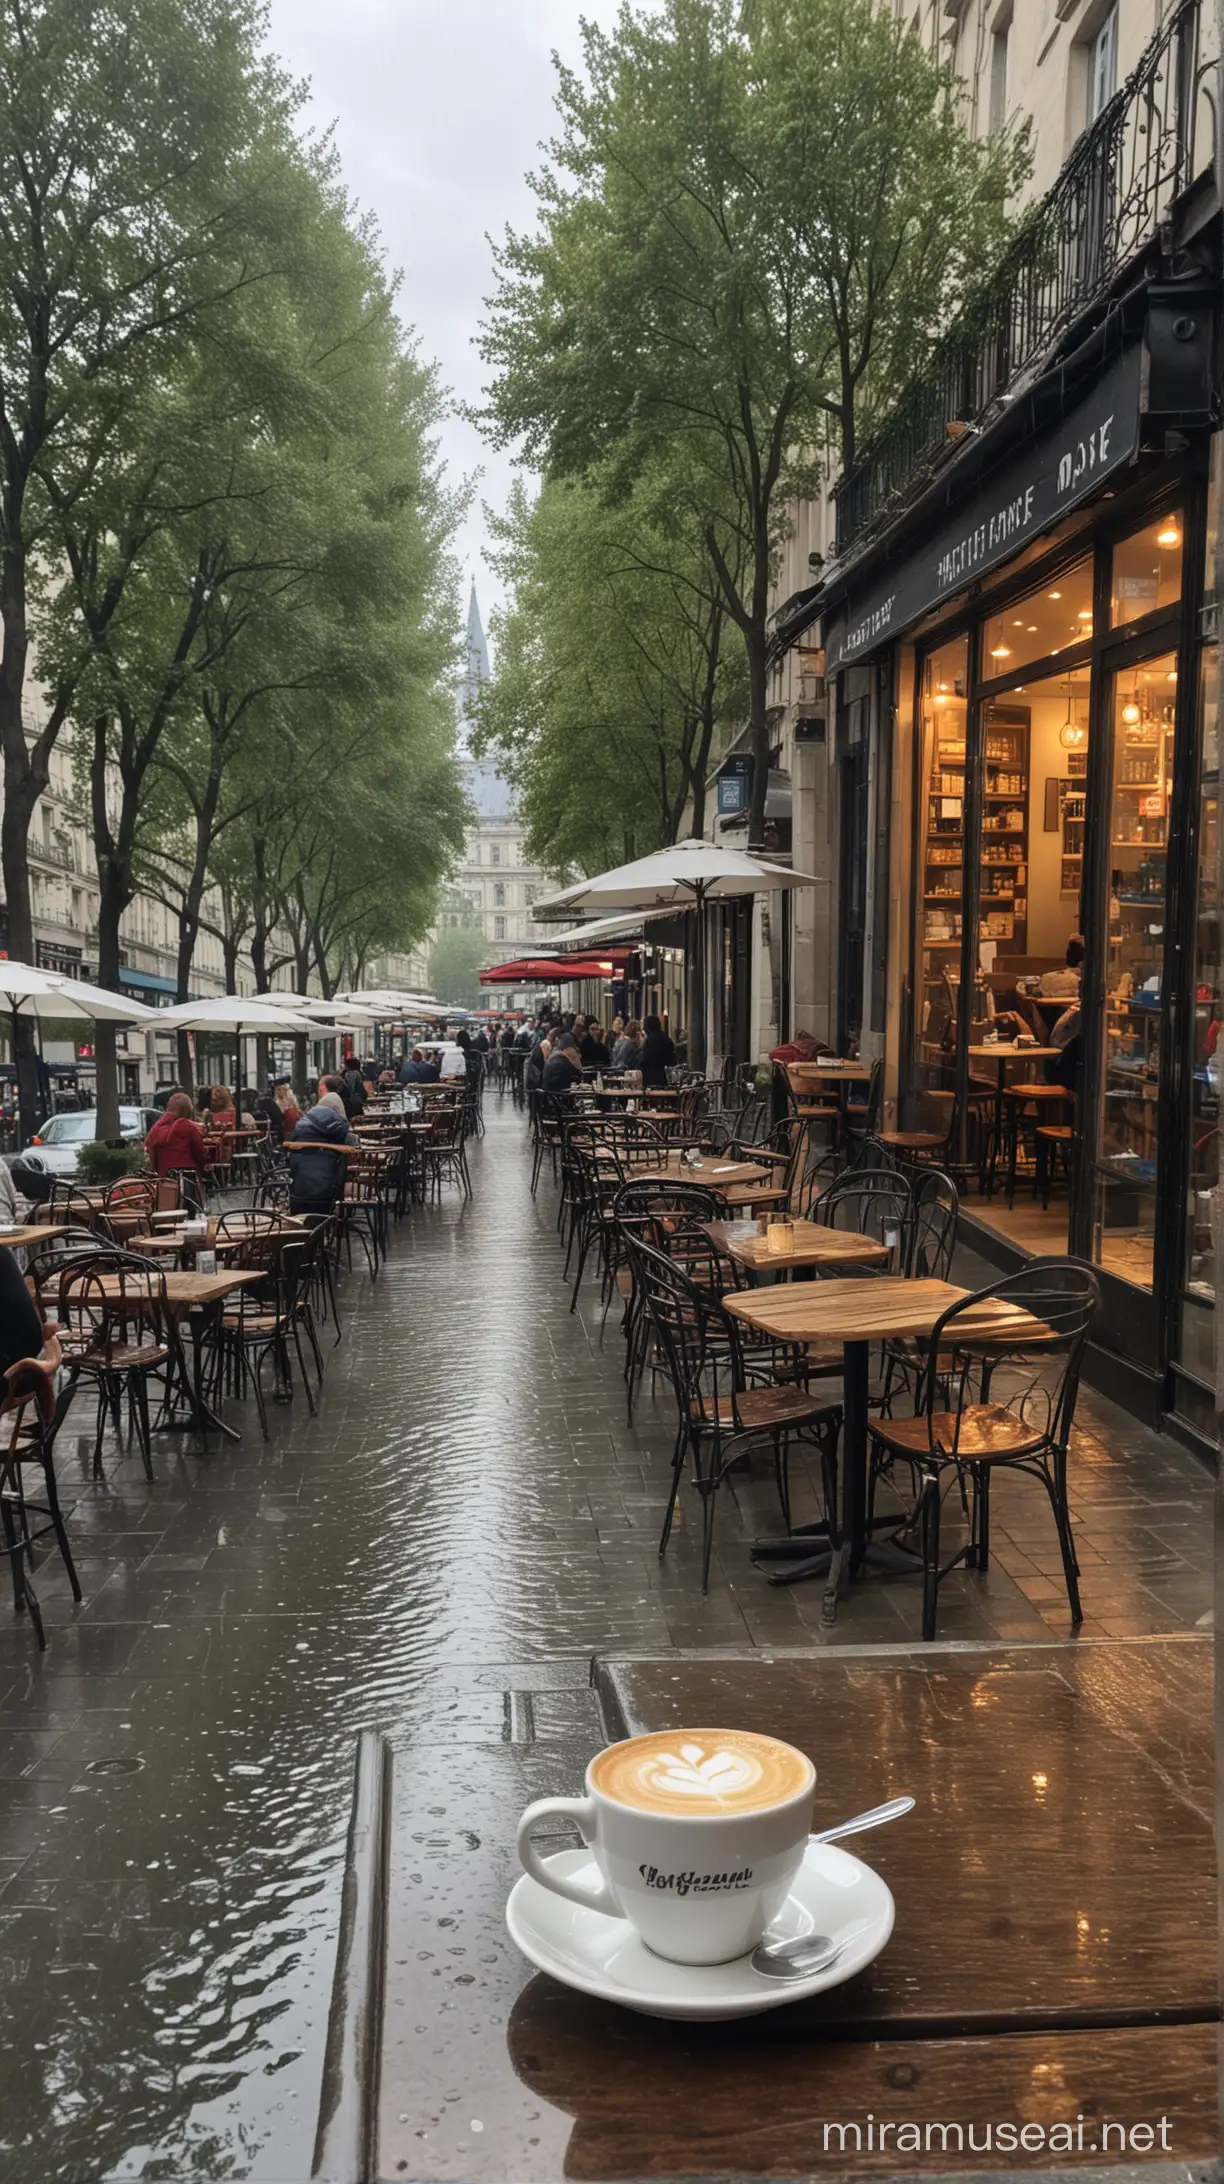 内心非常幸福、充实、专注地状态在塞纳河街边小雨后咖啡店